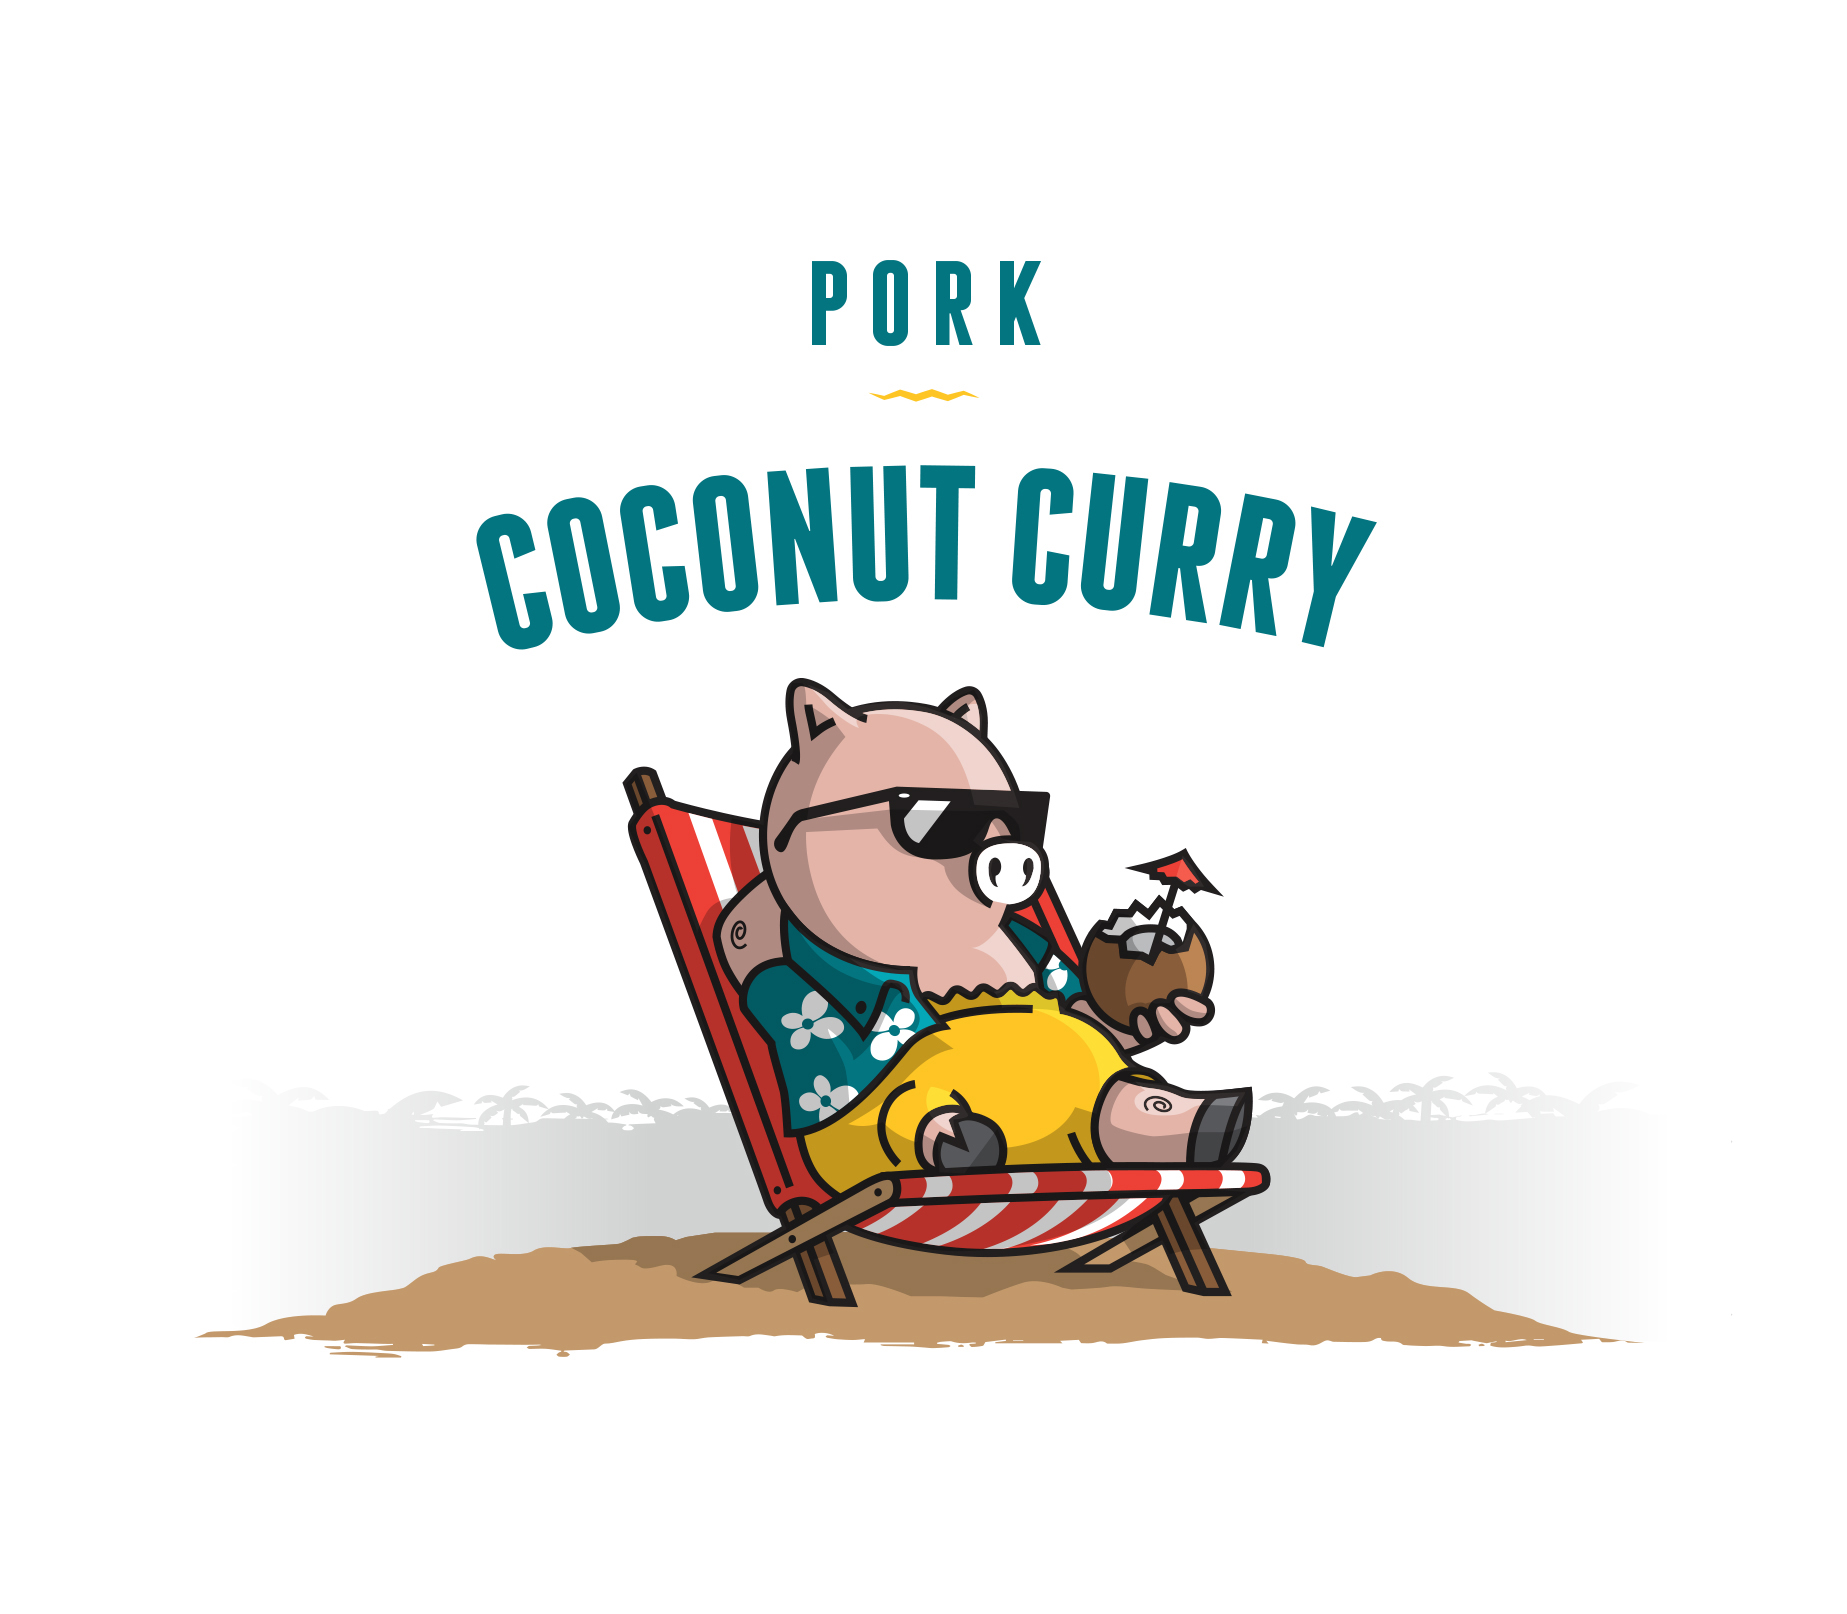 Pork_Coconut_Curry_flavor_1.jpg